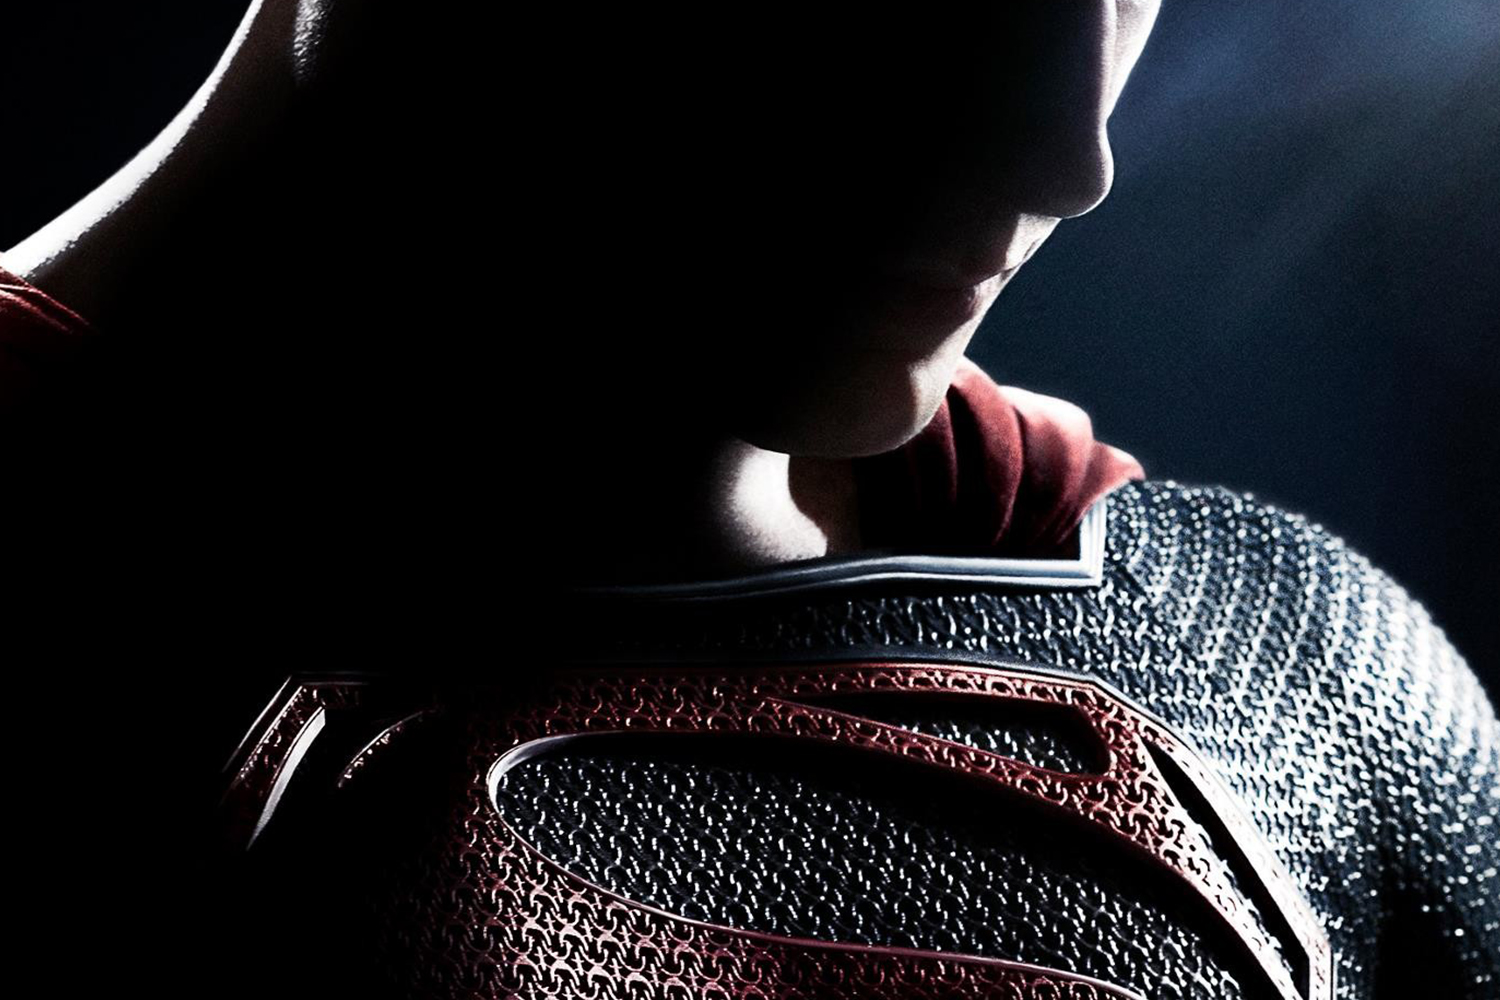 Movie Review: The leaden 'Man of Steel' doesn't soar